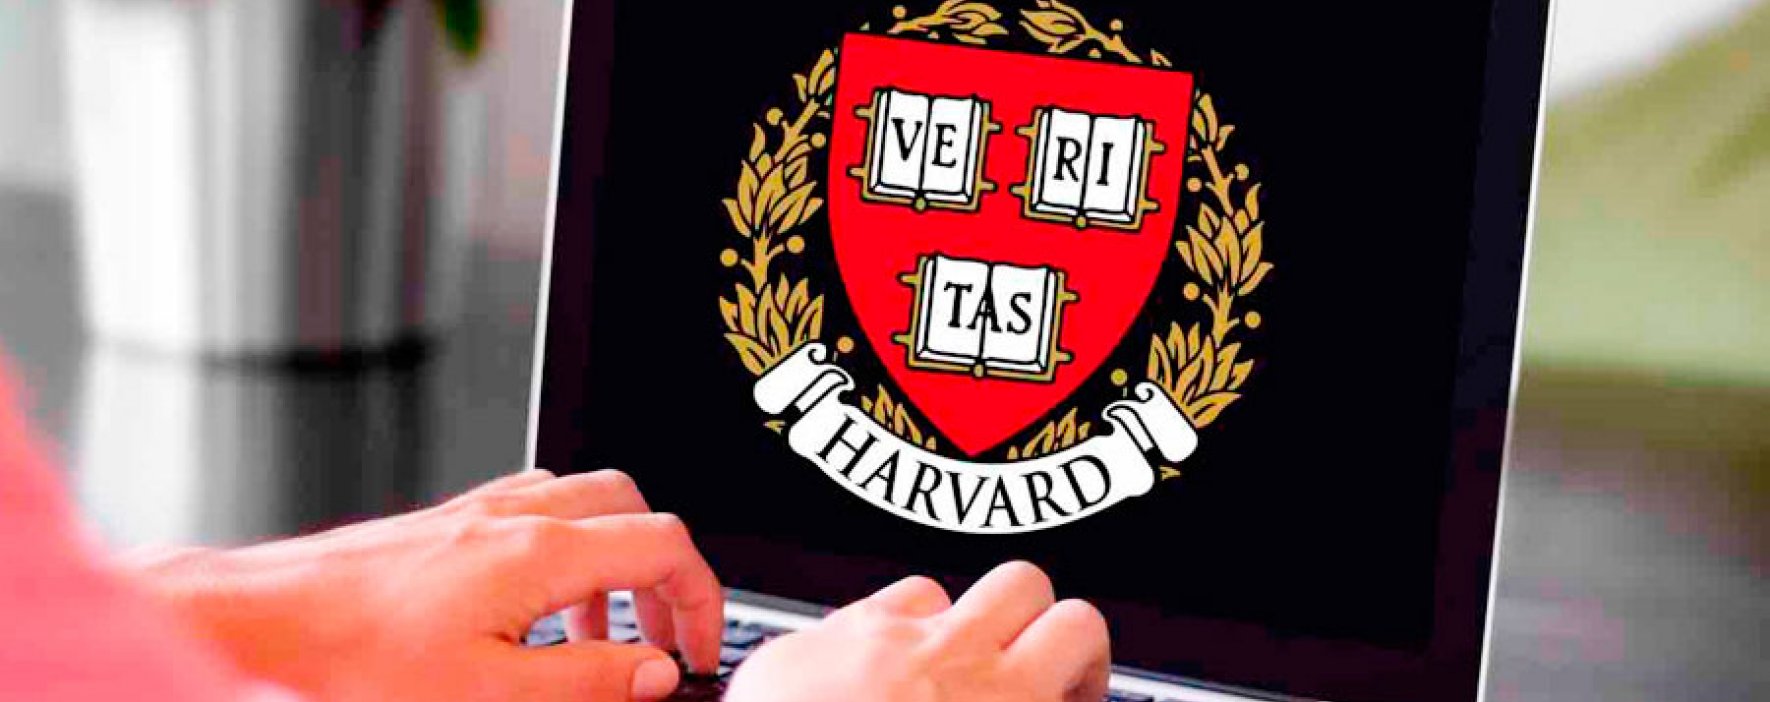 Cursos online gratuitos en Harvard